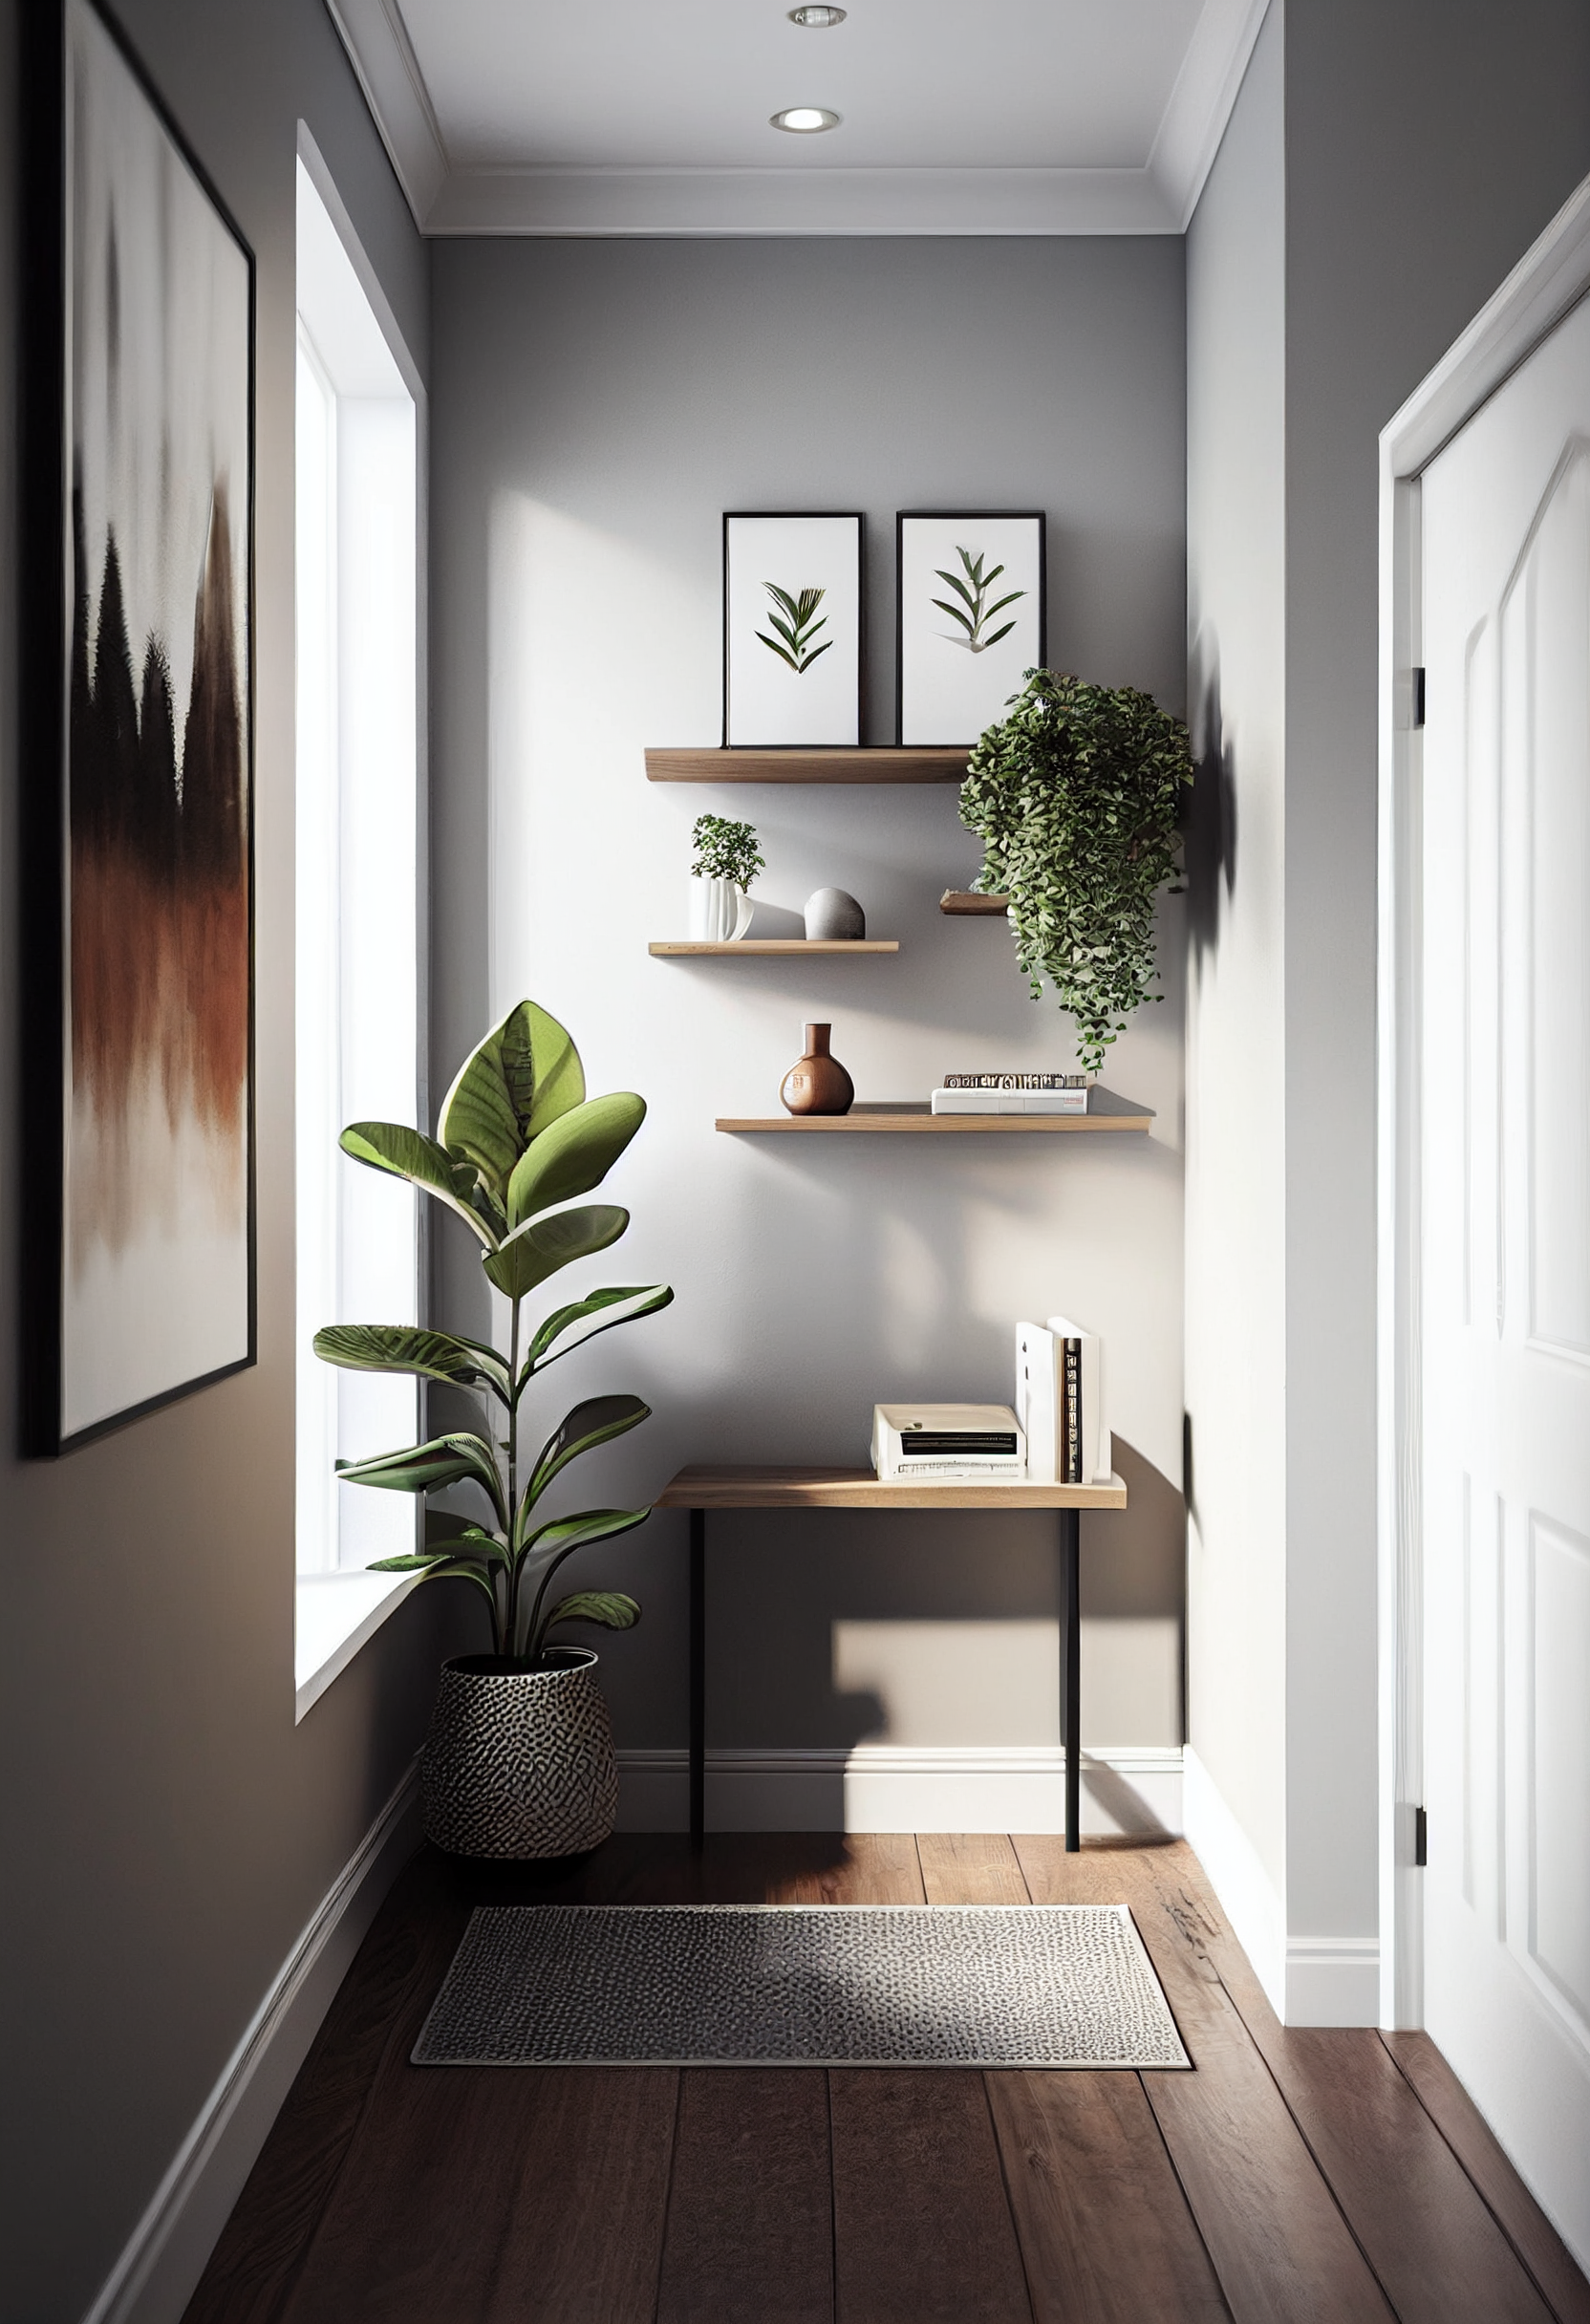 Hallway modern floating shelves